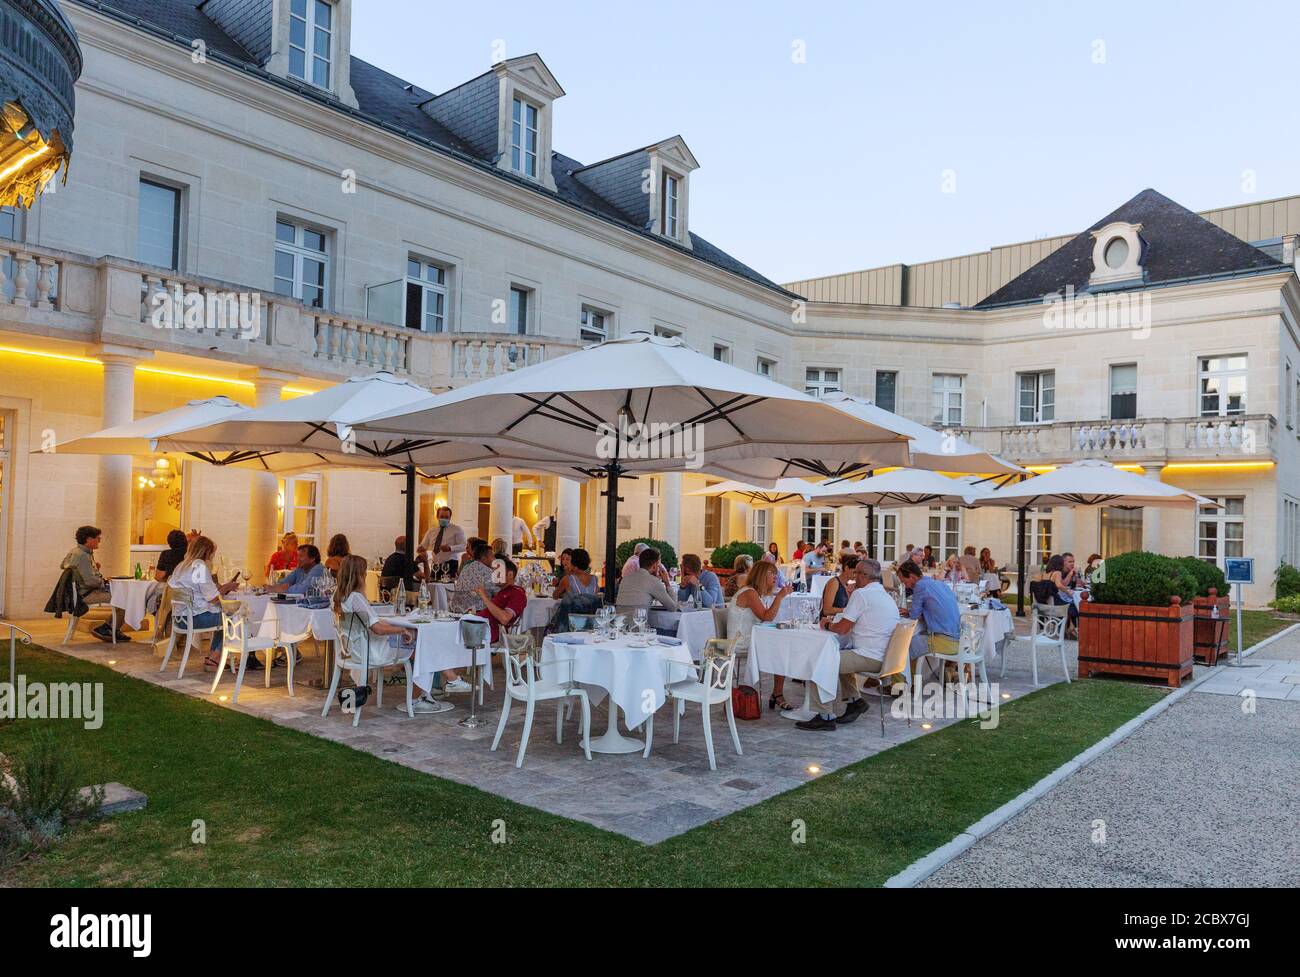 Leute, die abends im Hotelrestaurant essen; Chateau Belmont Hotel, Tours France; ein Luxushotel im Loire-Tal Frankreich Europa Stockfoto